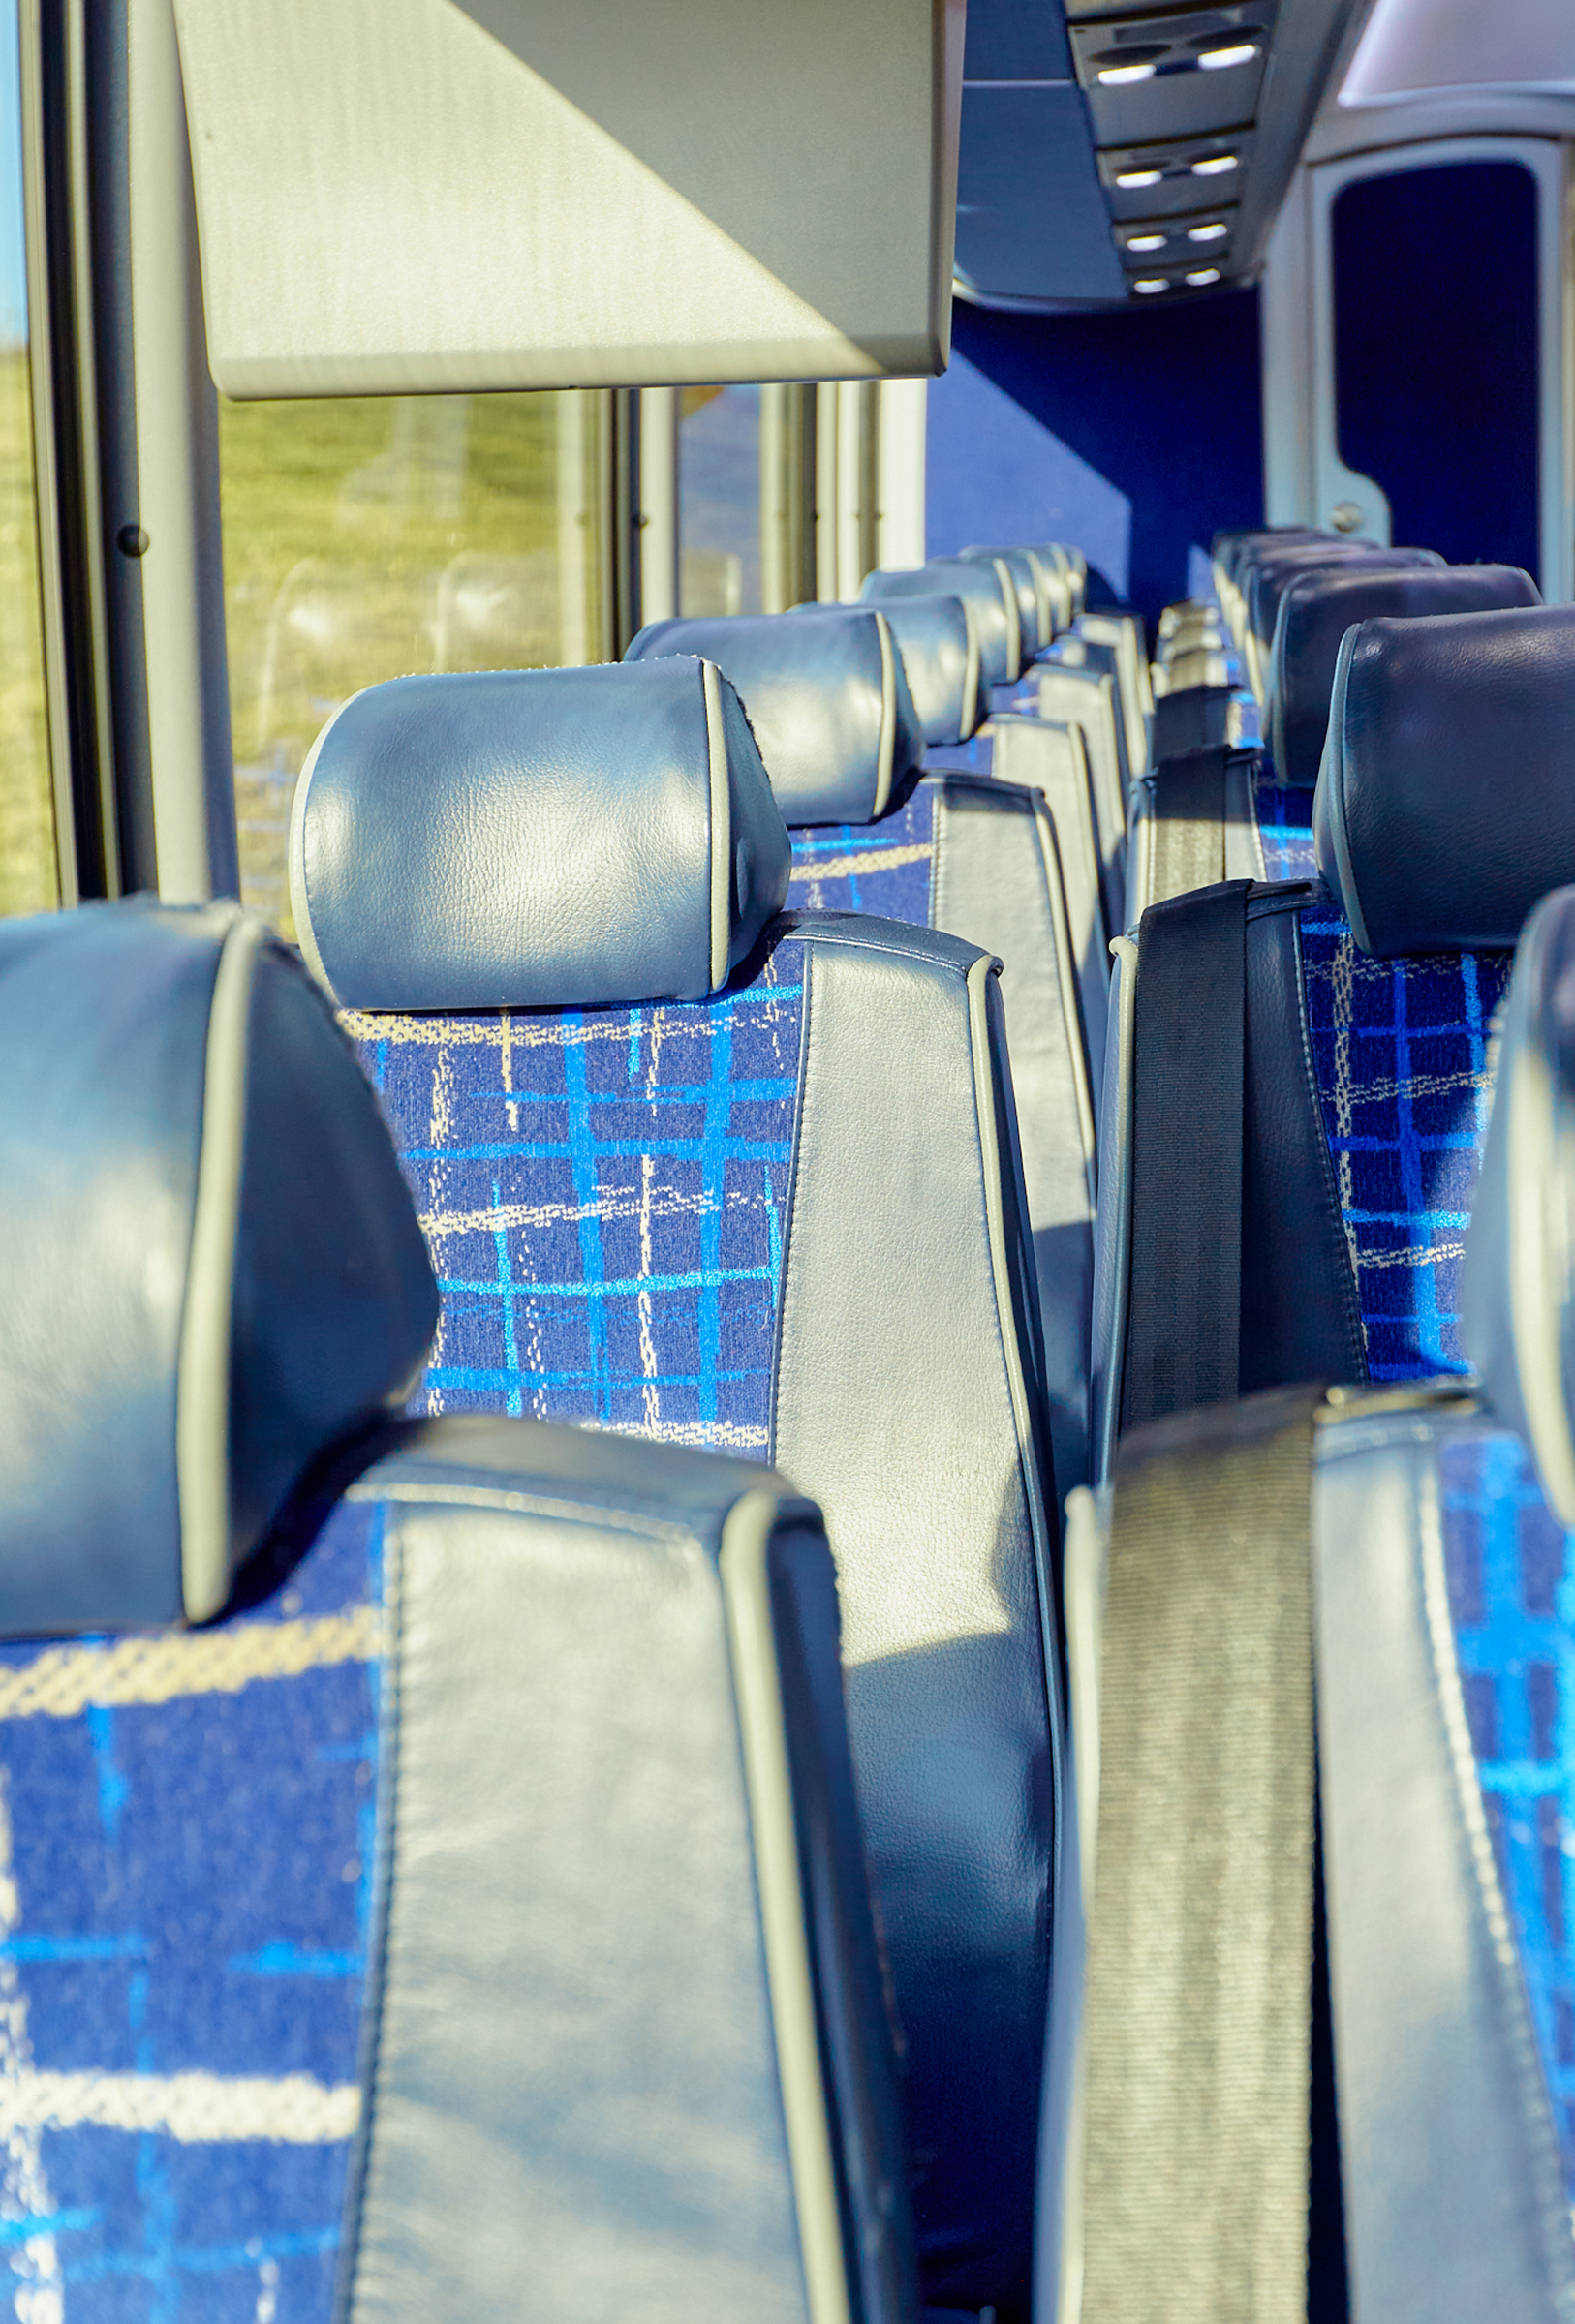 Passenger motorcoach charter bus seats